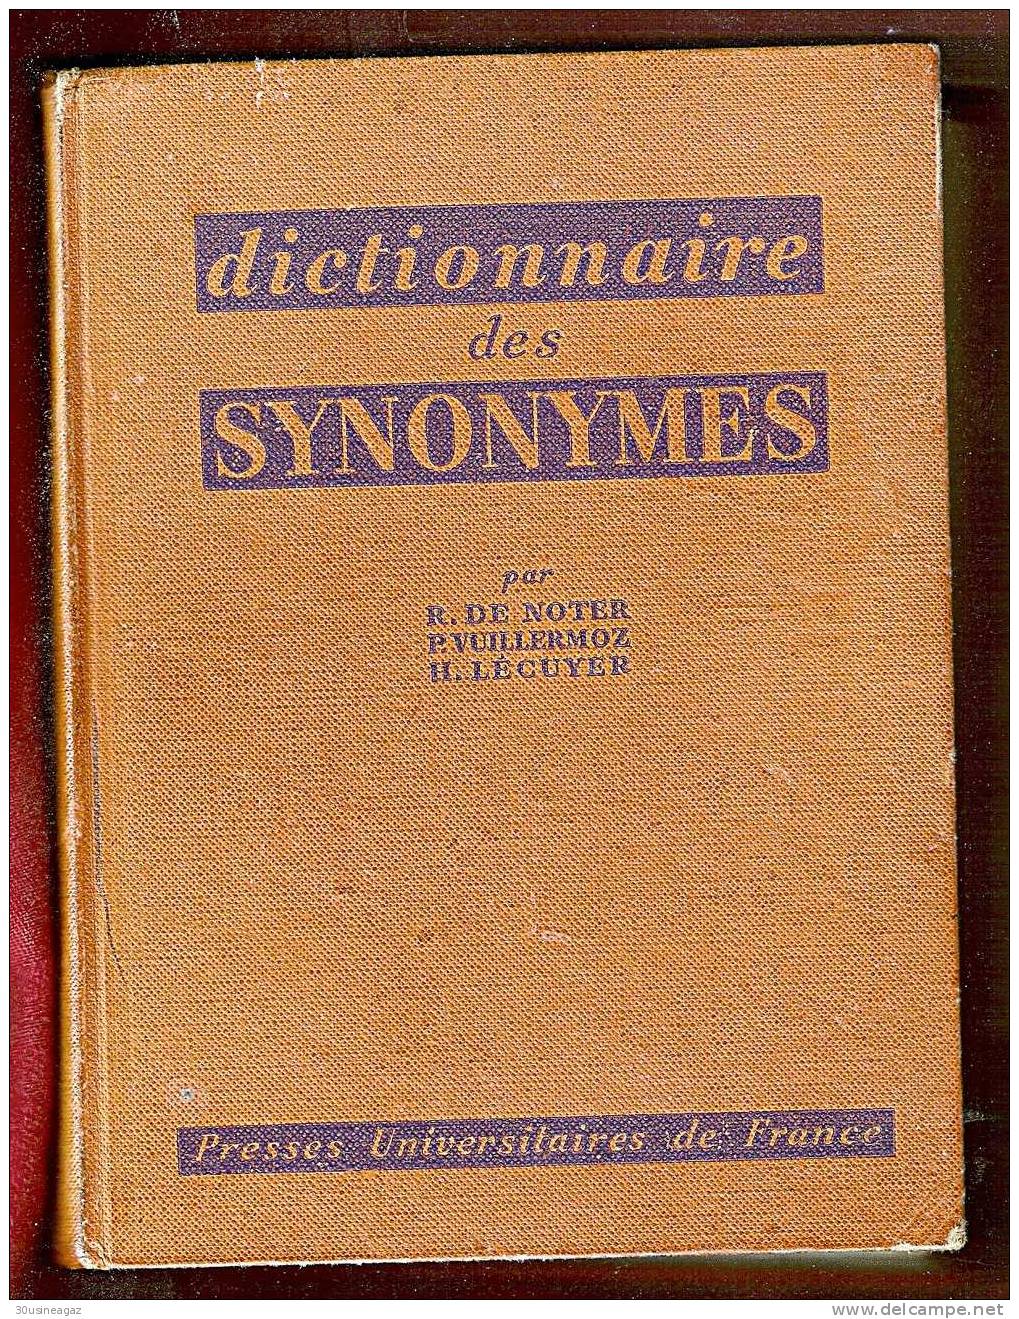 Dictionnaire Des Synonymes. R. De Noter,P. Vuillermoz, H.Lécuyer - Dictionaries